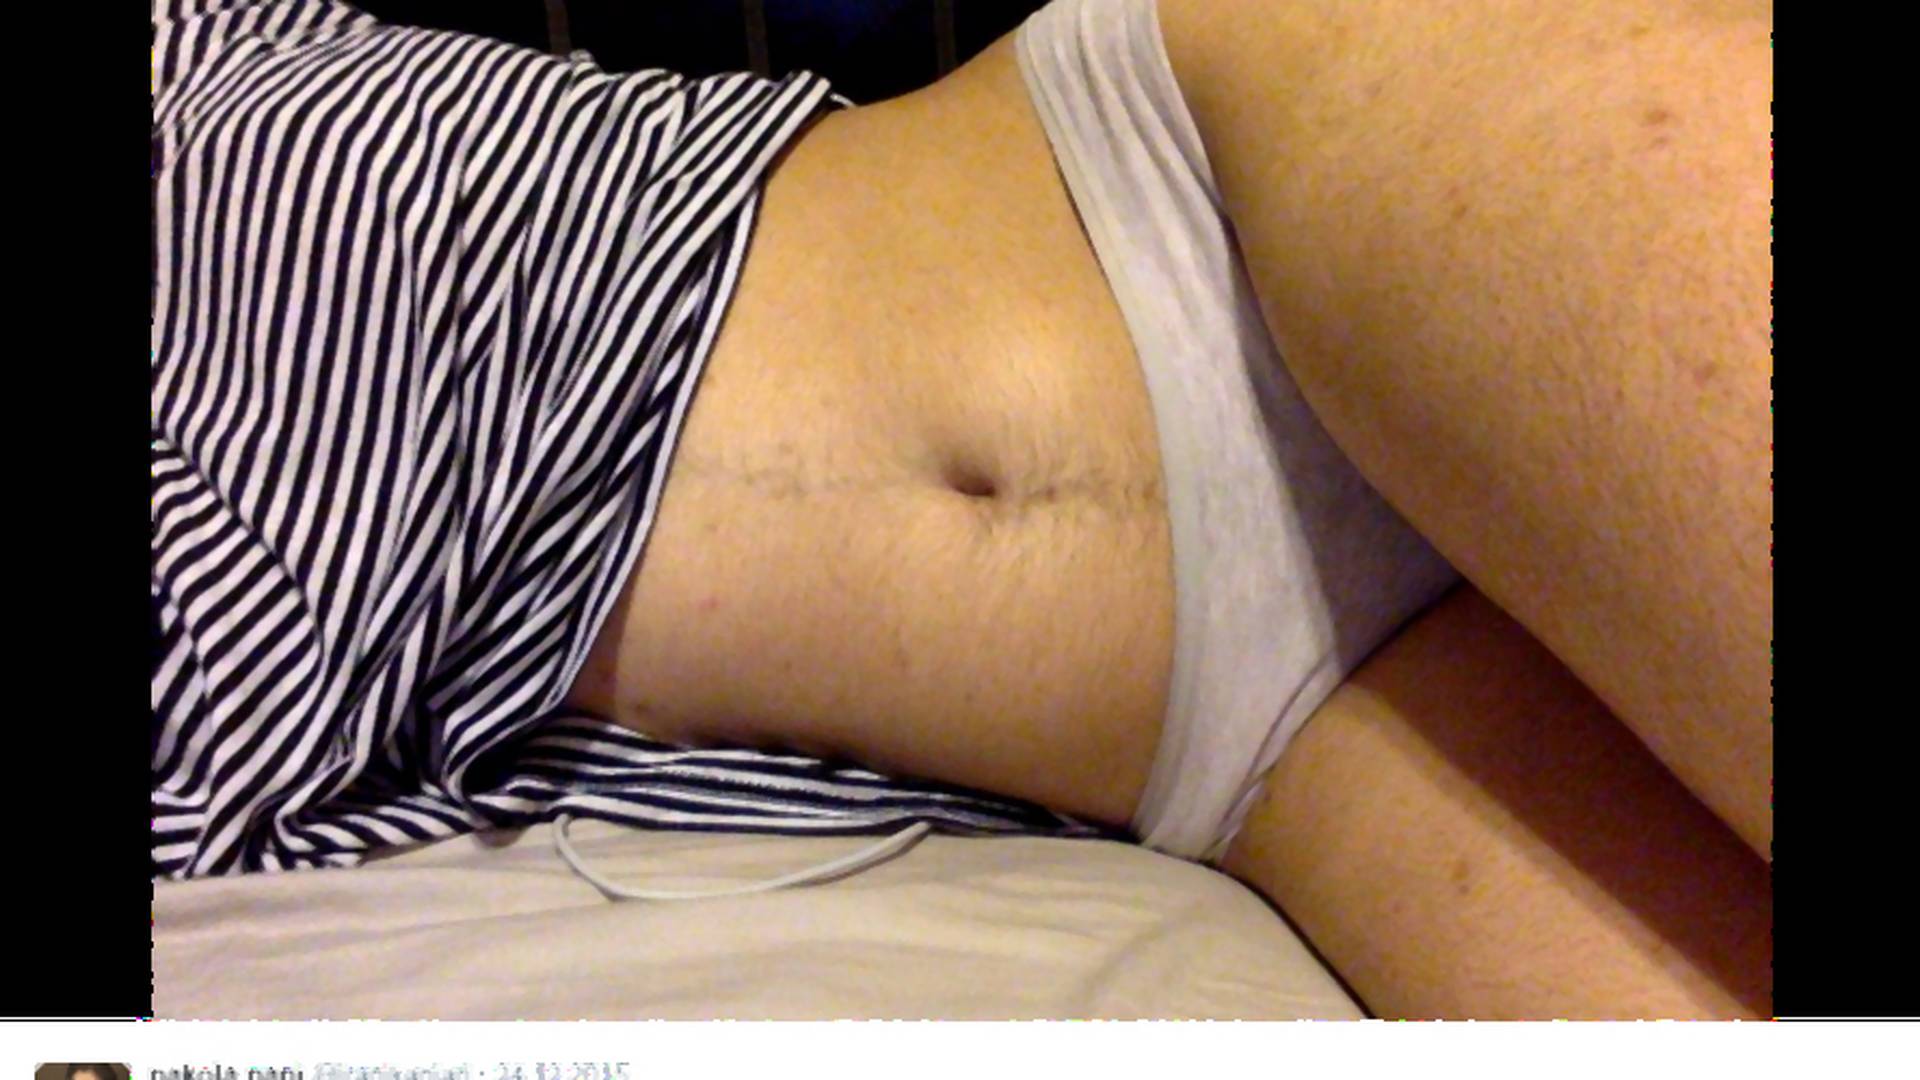 Dziewczyna pokazała zdjęcia owłosionego brzucha, podzieliła internautów. Większość ją masakruje